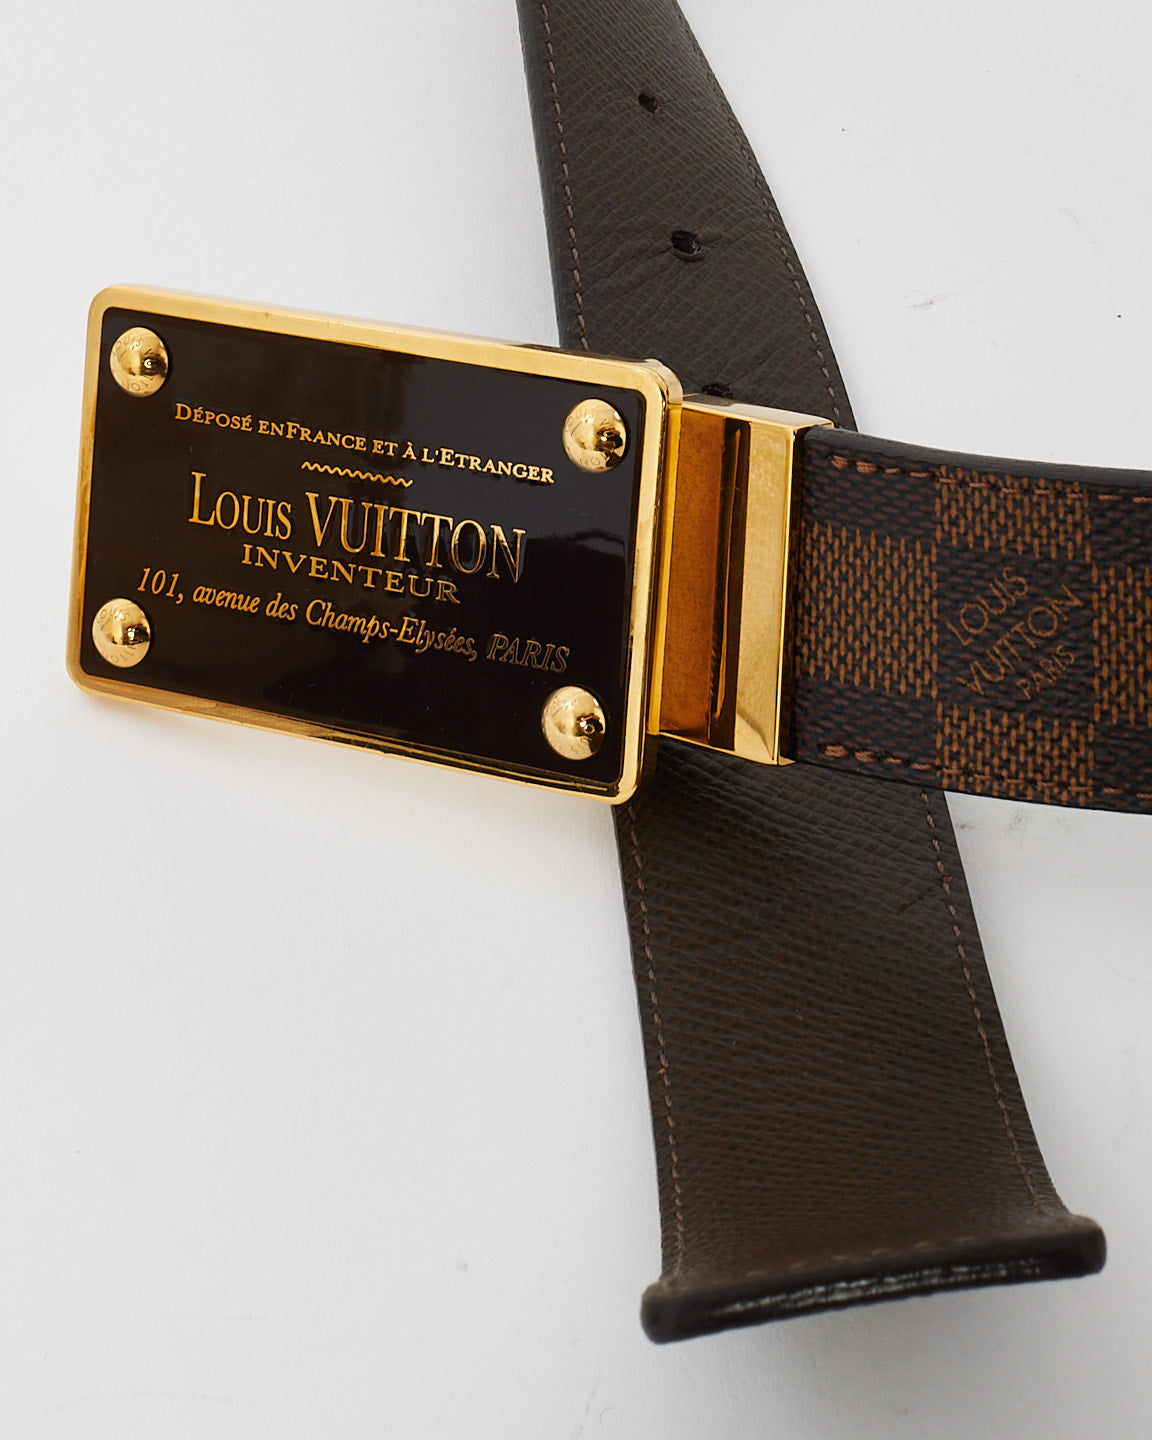 Ceinture réversible Louis Vuitton en cuir marron et toile Damier Ebène plaquée or Inventeur - 95/38